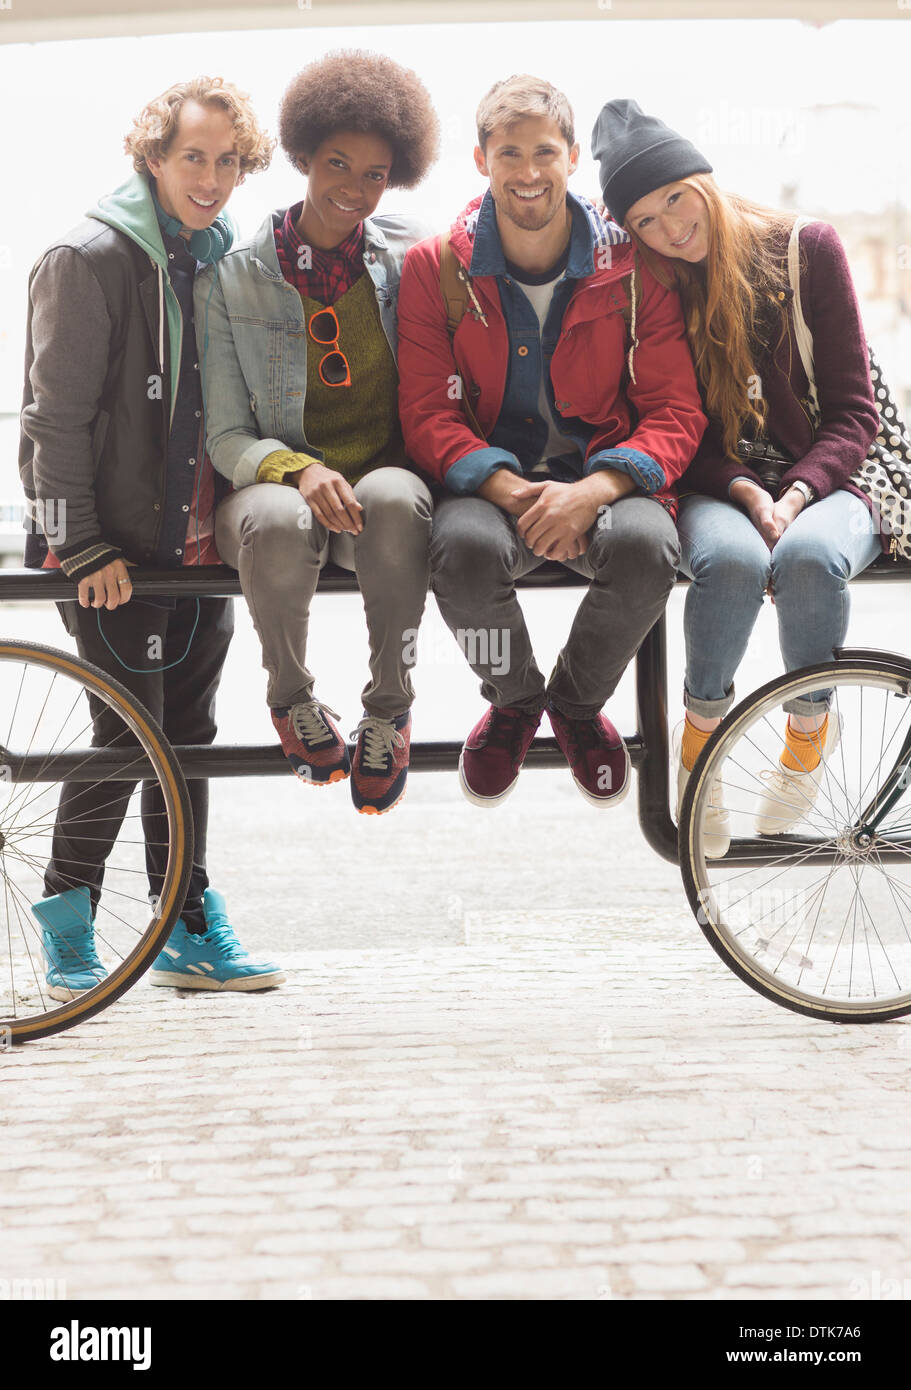 Freunde, die zusammen auf städtischen Fahrradträger lächelnd Stockfoto